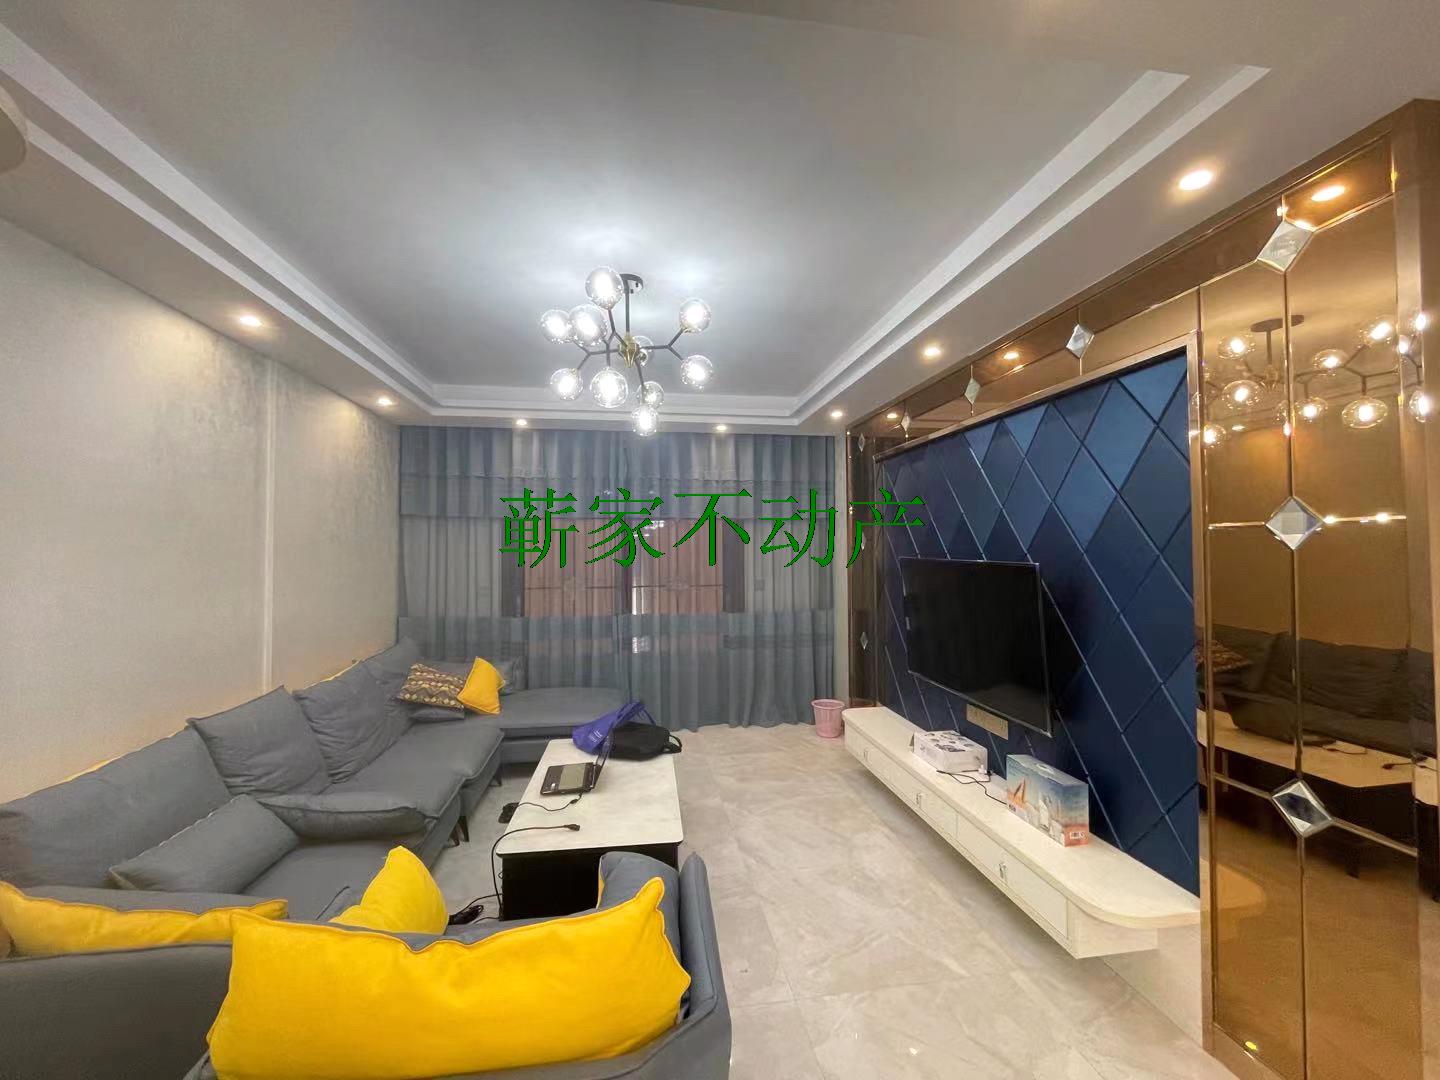 凤凰世家 精装修 房东在武汉定居  遇到合适的有缘人 就卖